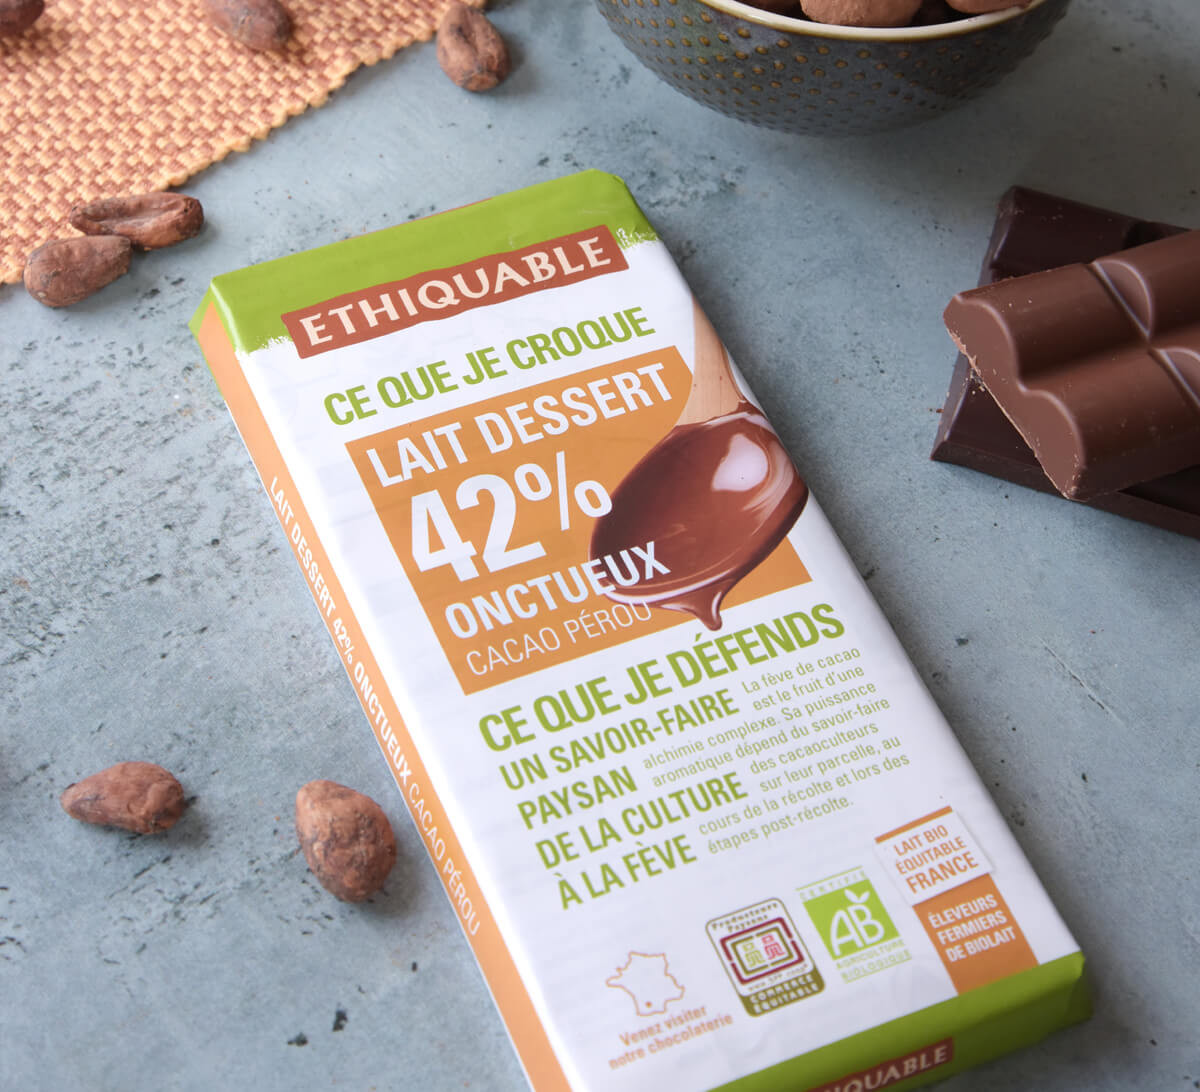 Ethiquable : Chocolat lait dessert onctueux 42% bio et issu du Commerce Equitable